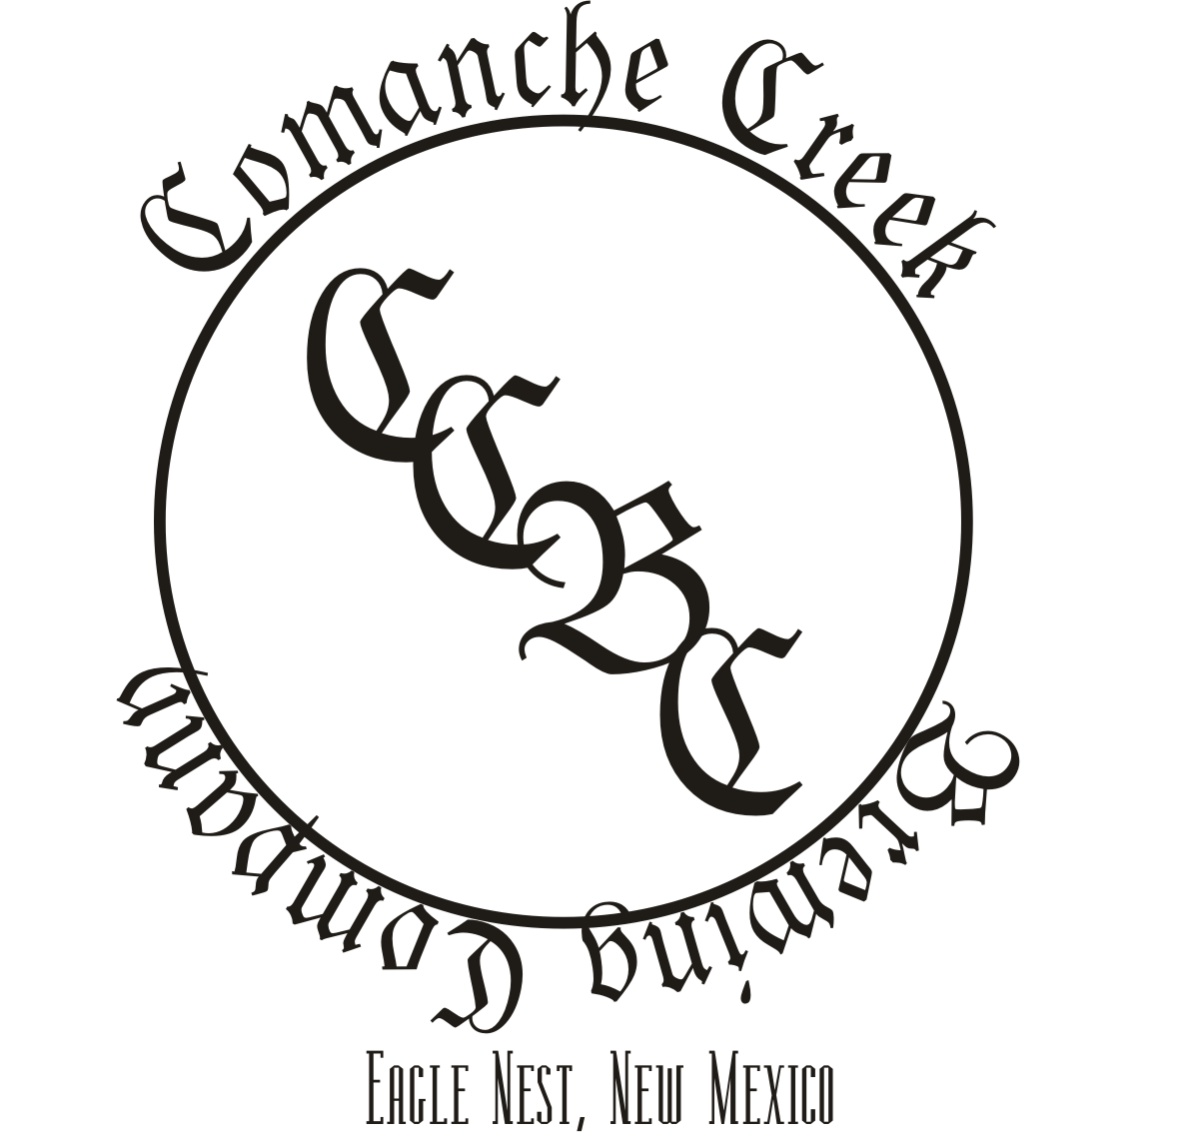 Comanche Creek Brewing Company